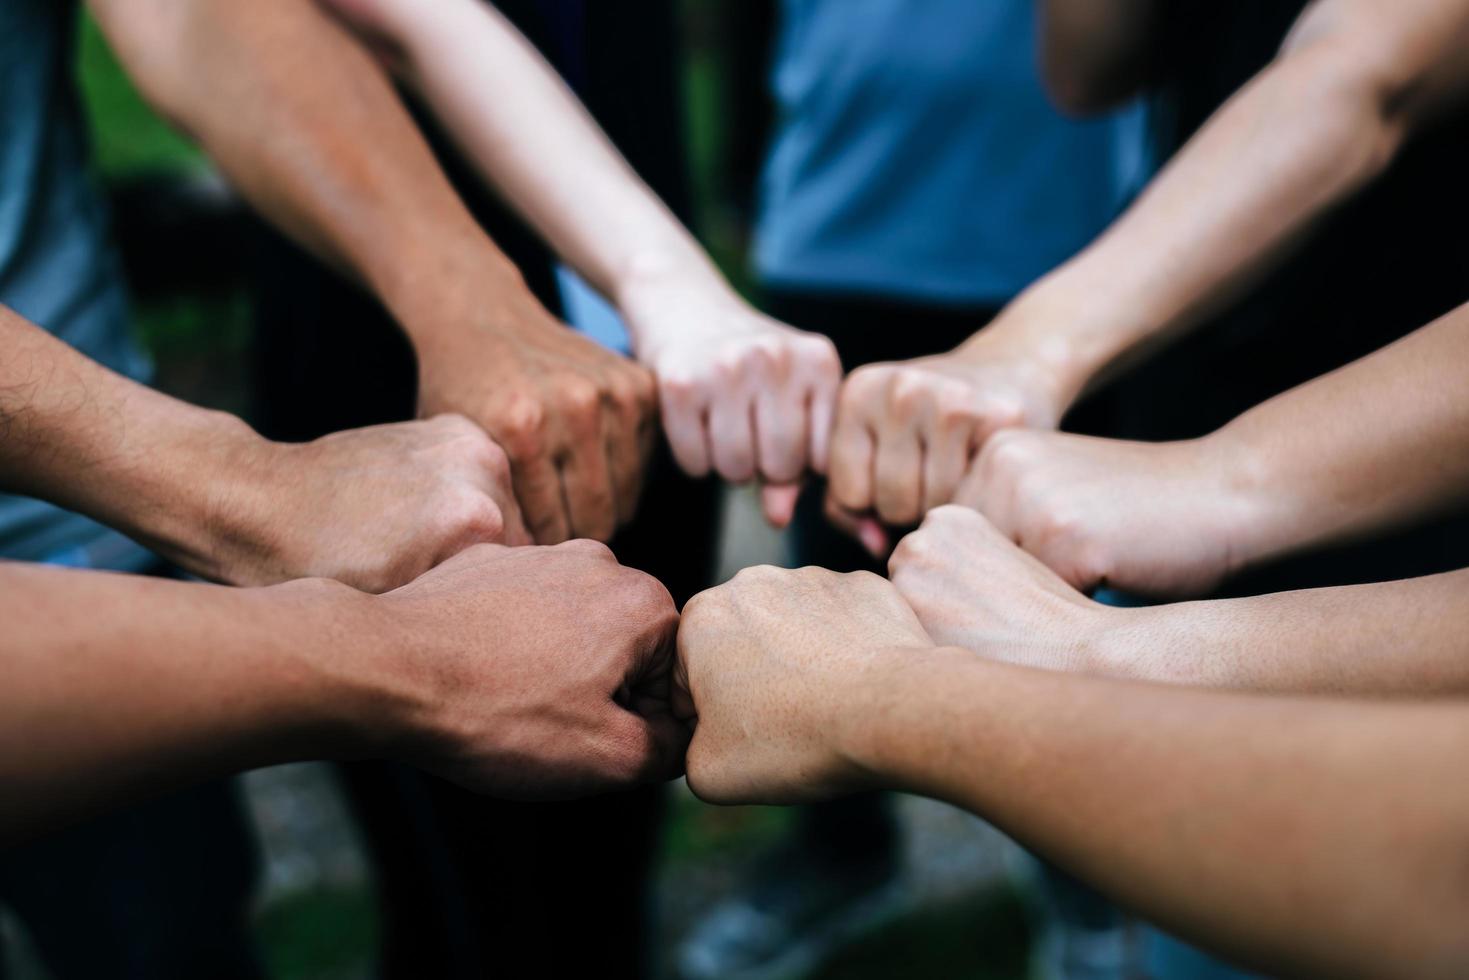 close-up van de multi-etnische groep die zich met handen in elkaar bevindt foto